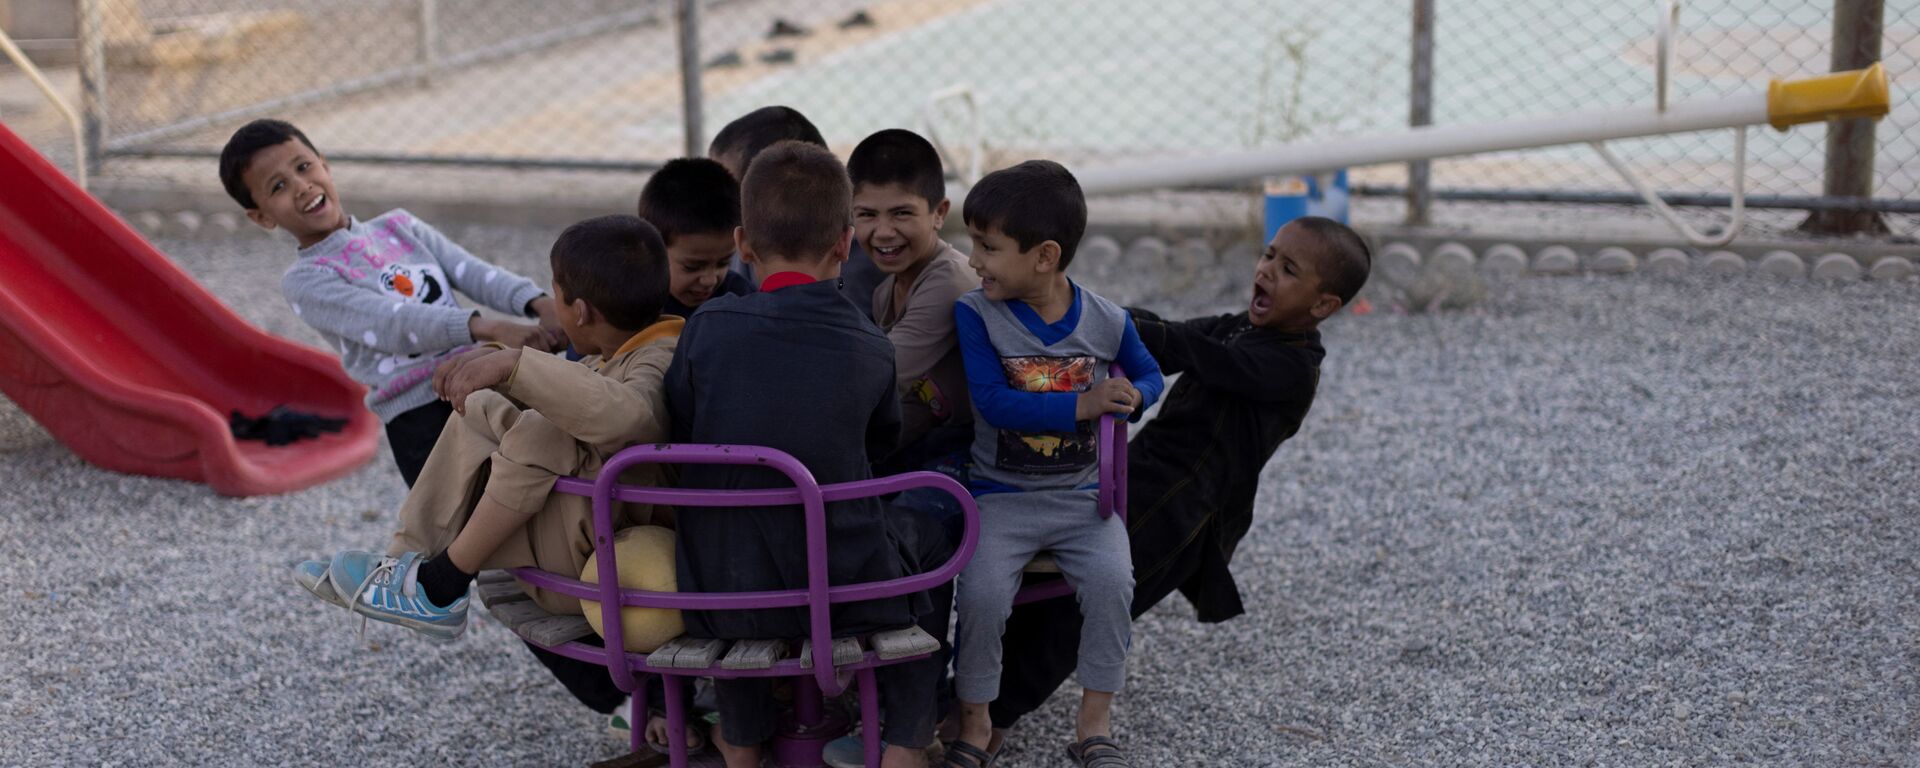 Дети из приюта играют во дворе после школьных занятий, Кабул - Sputnik Тоҷикистон, 1920, 08.12.2021